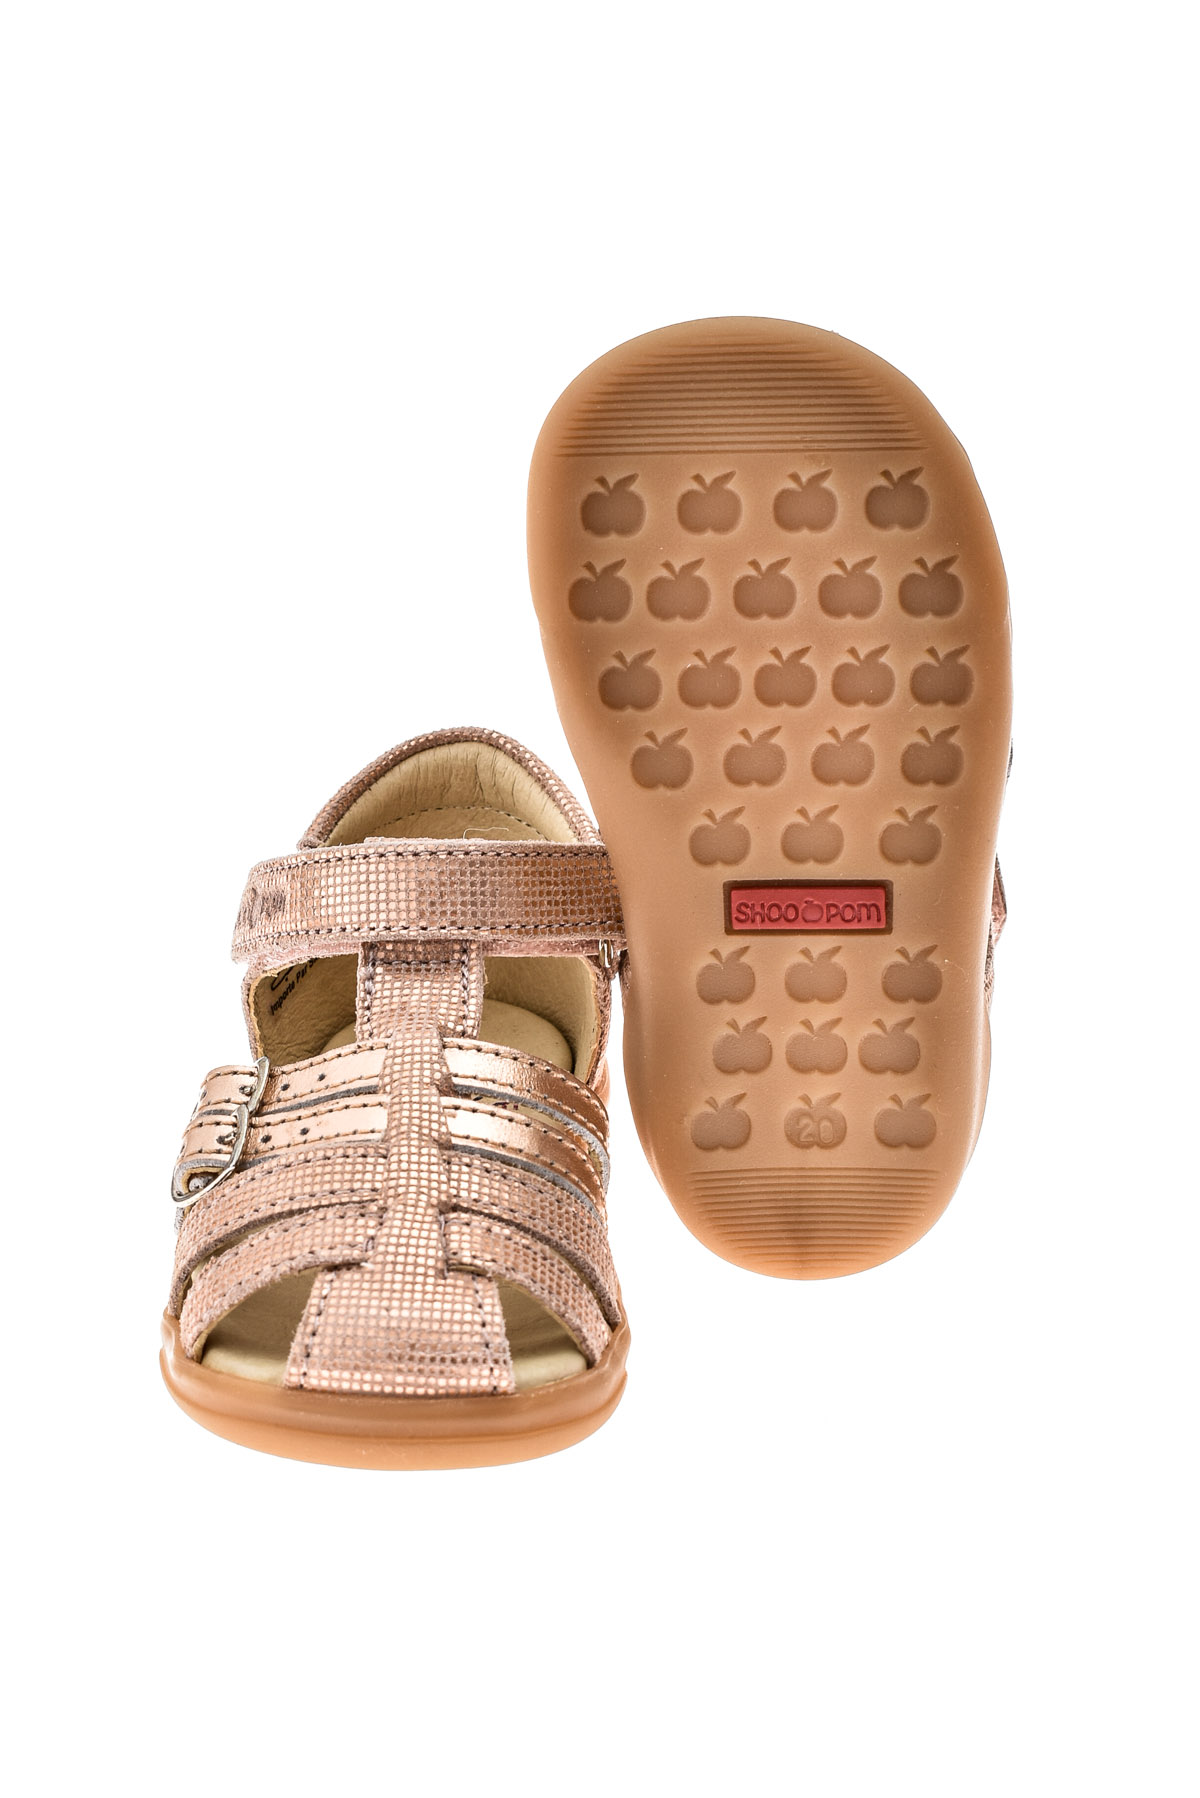 Sandals for baby girls - SHOO POM - 3